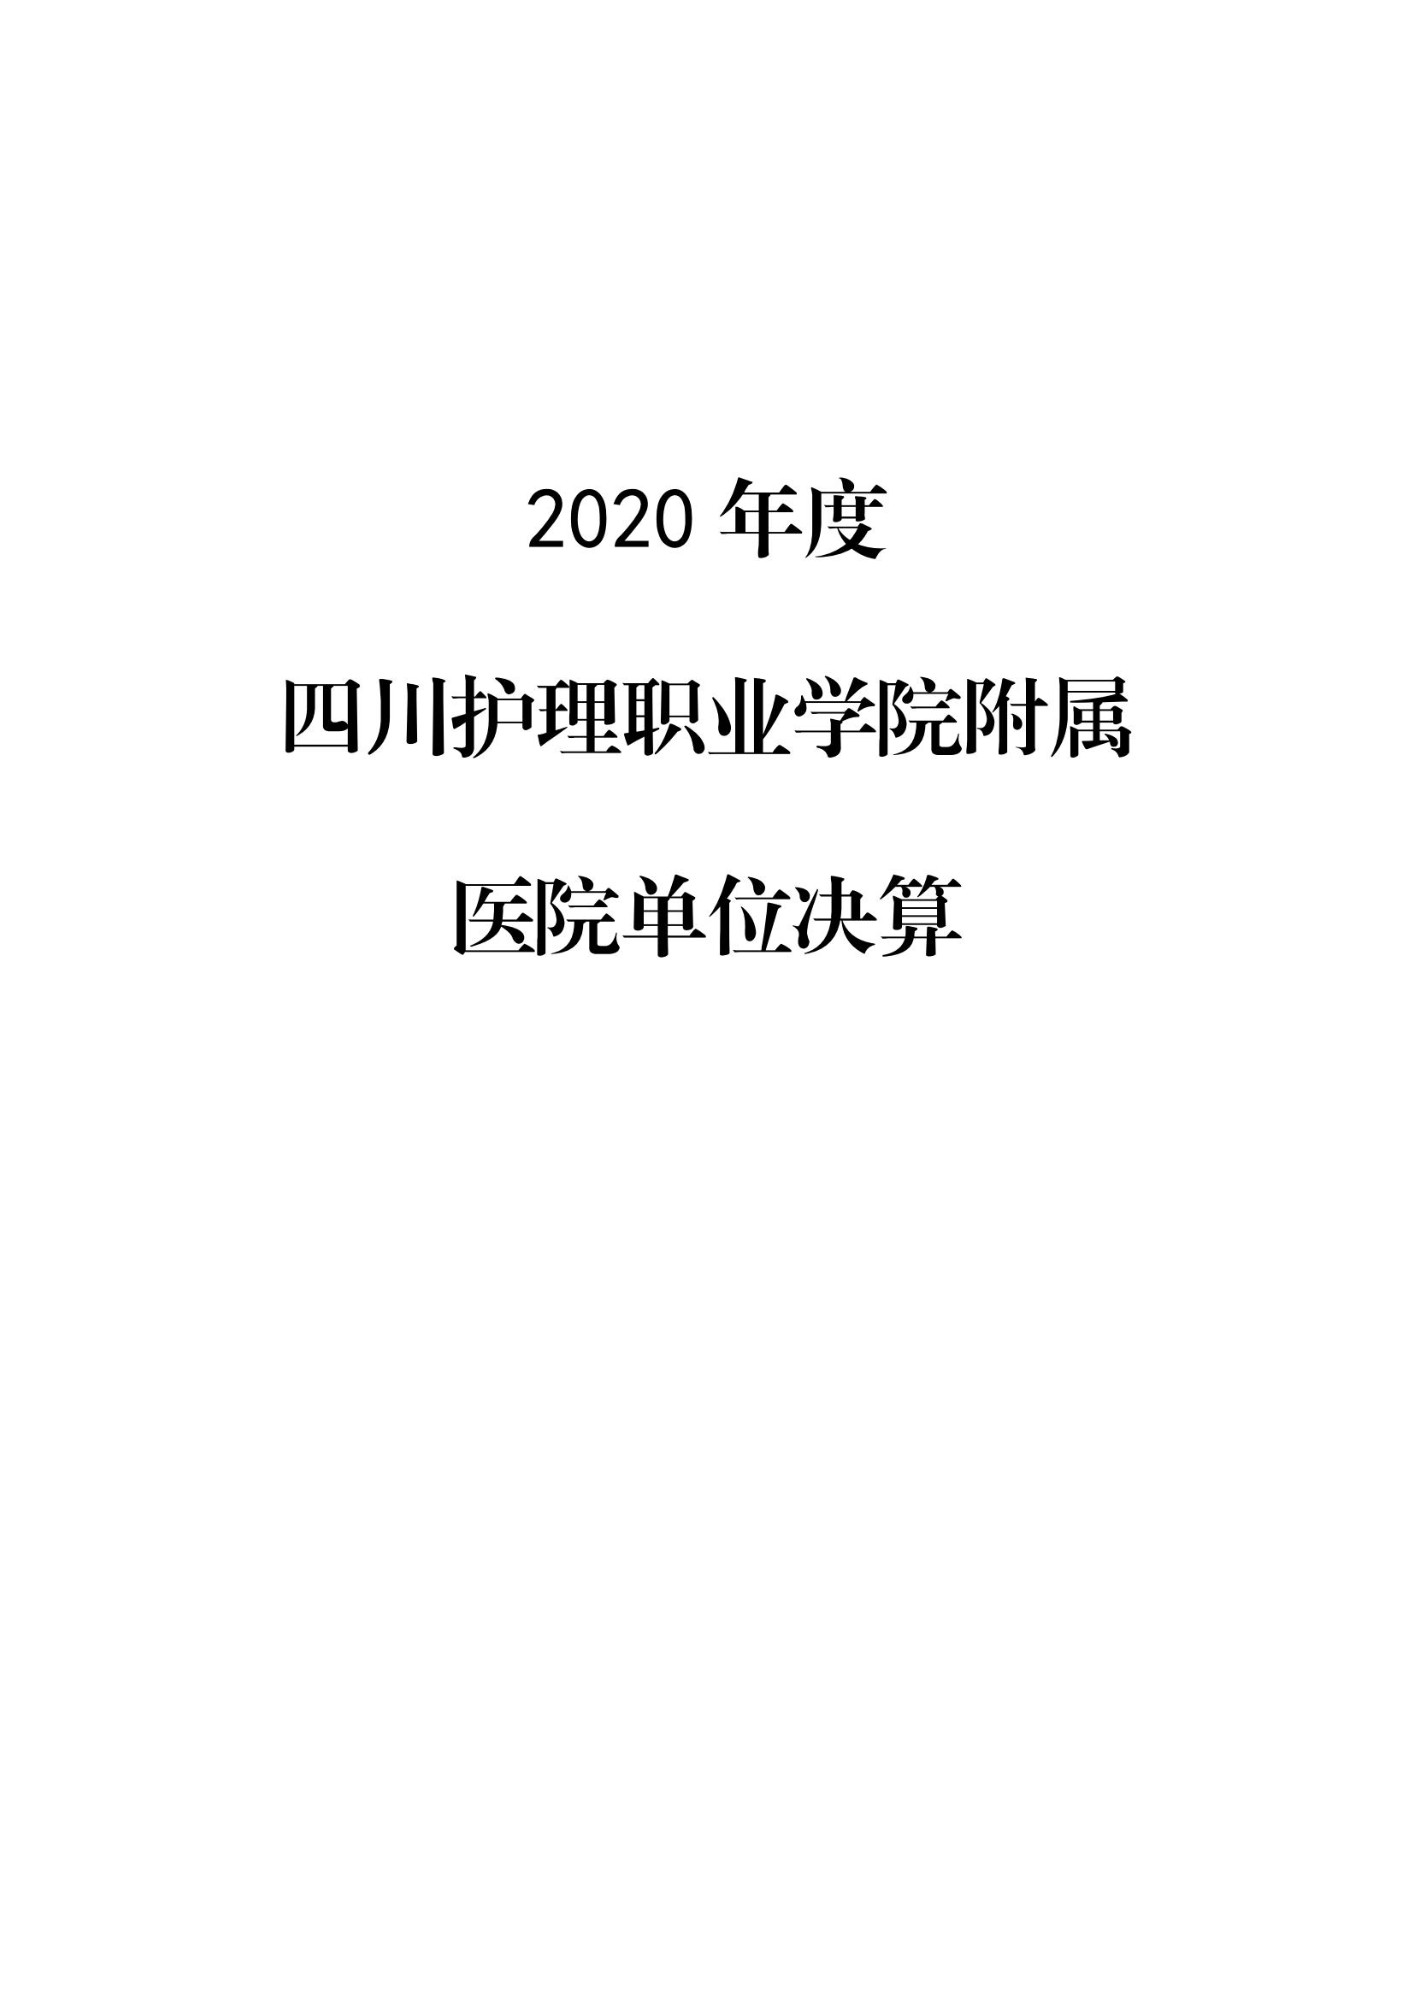 2020年度四川护理职业学院附属医院单位决算